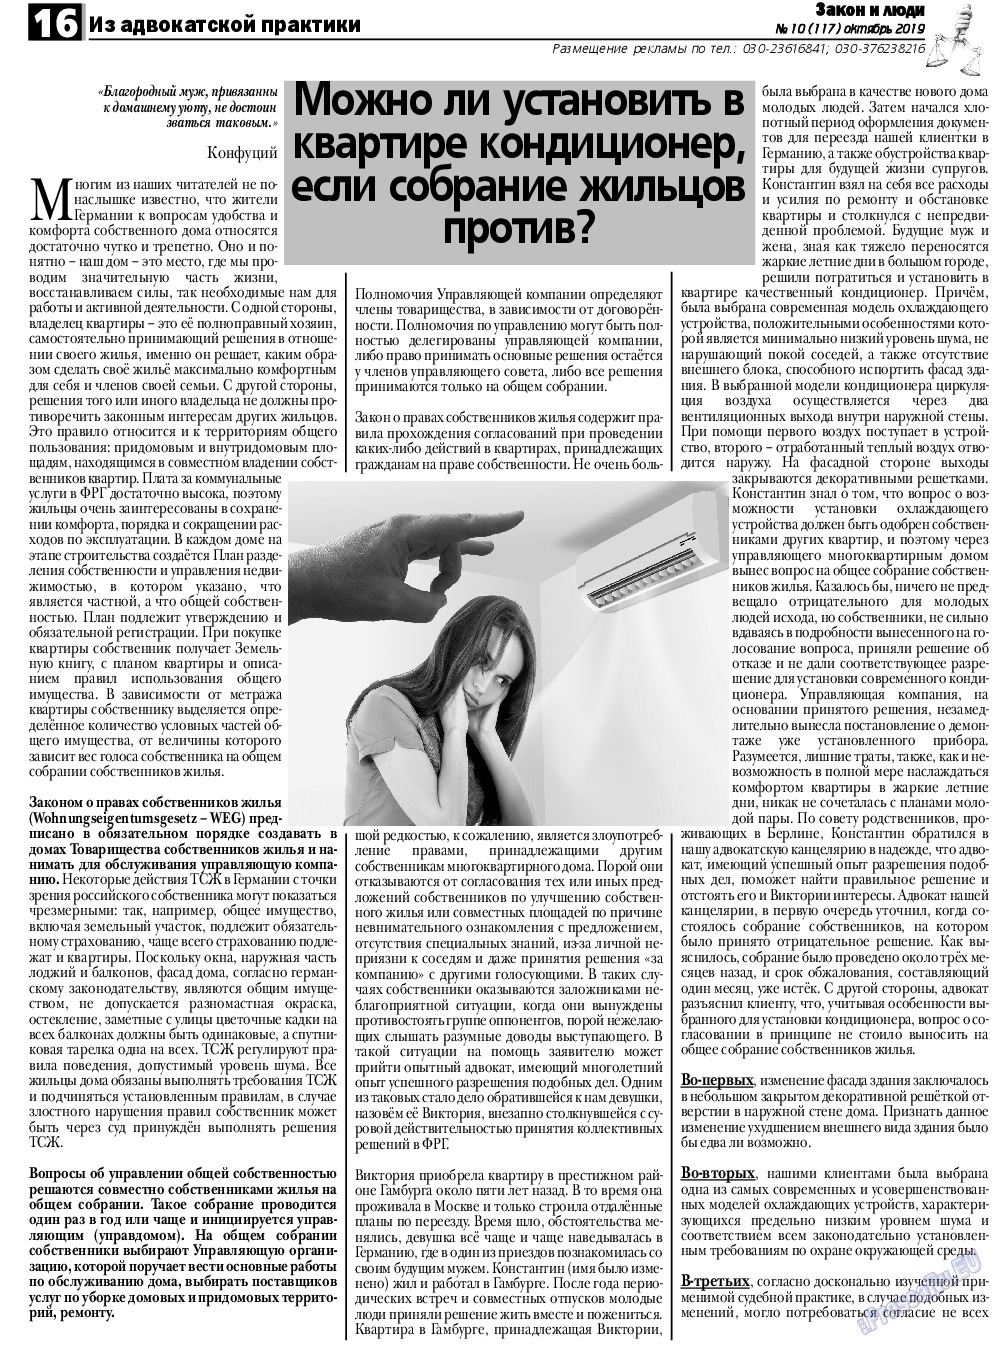 Закон и люди, газета. 2019 №10 стр.16